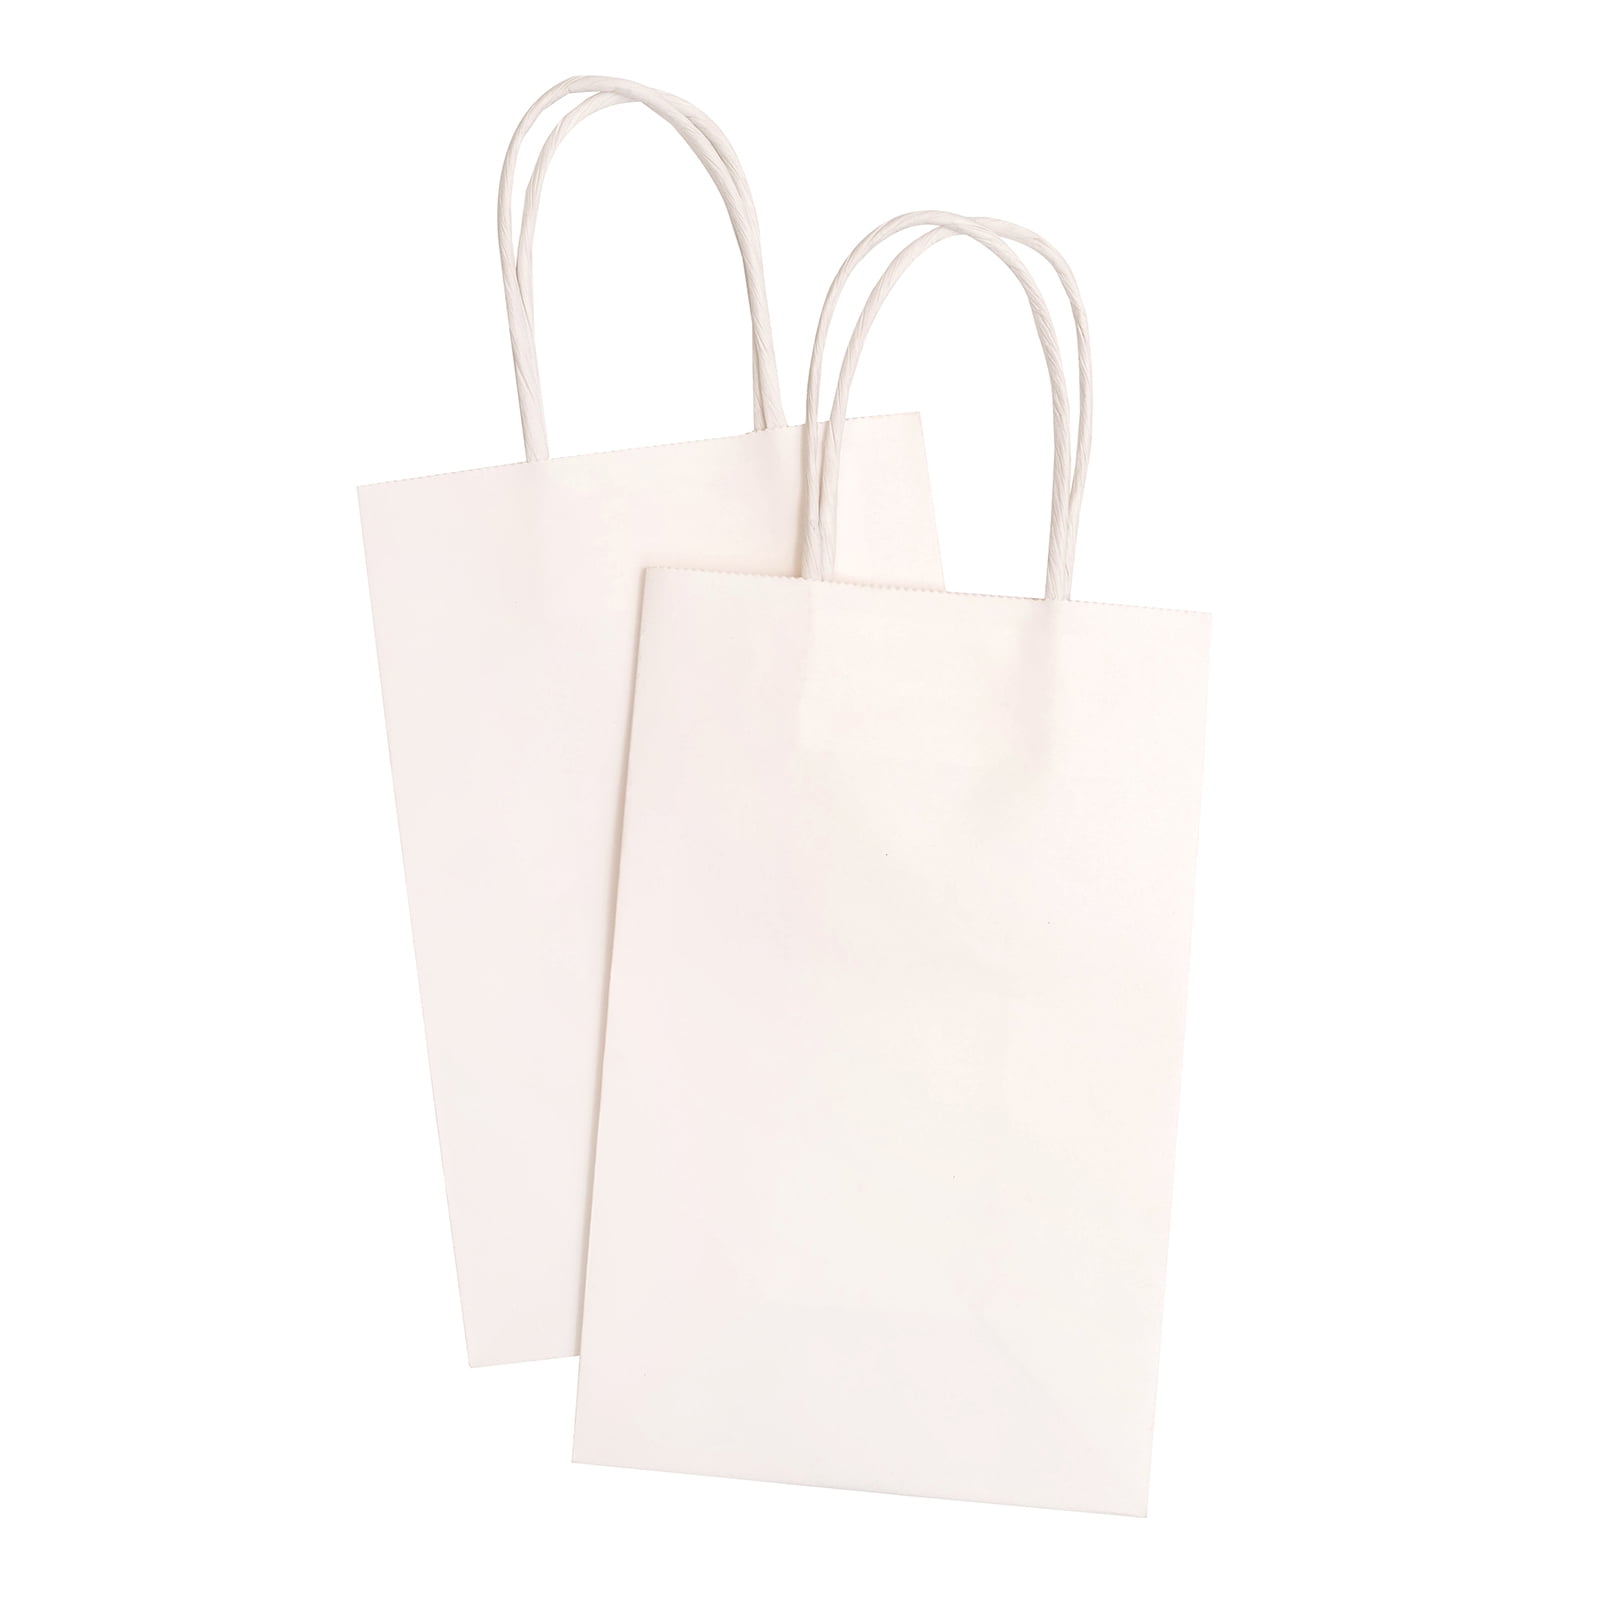 Craft Paper Bag - Craft Paper Bag Mockup - TemplateMonster